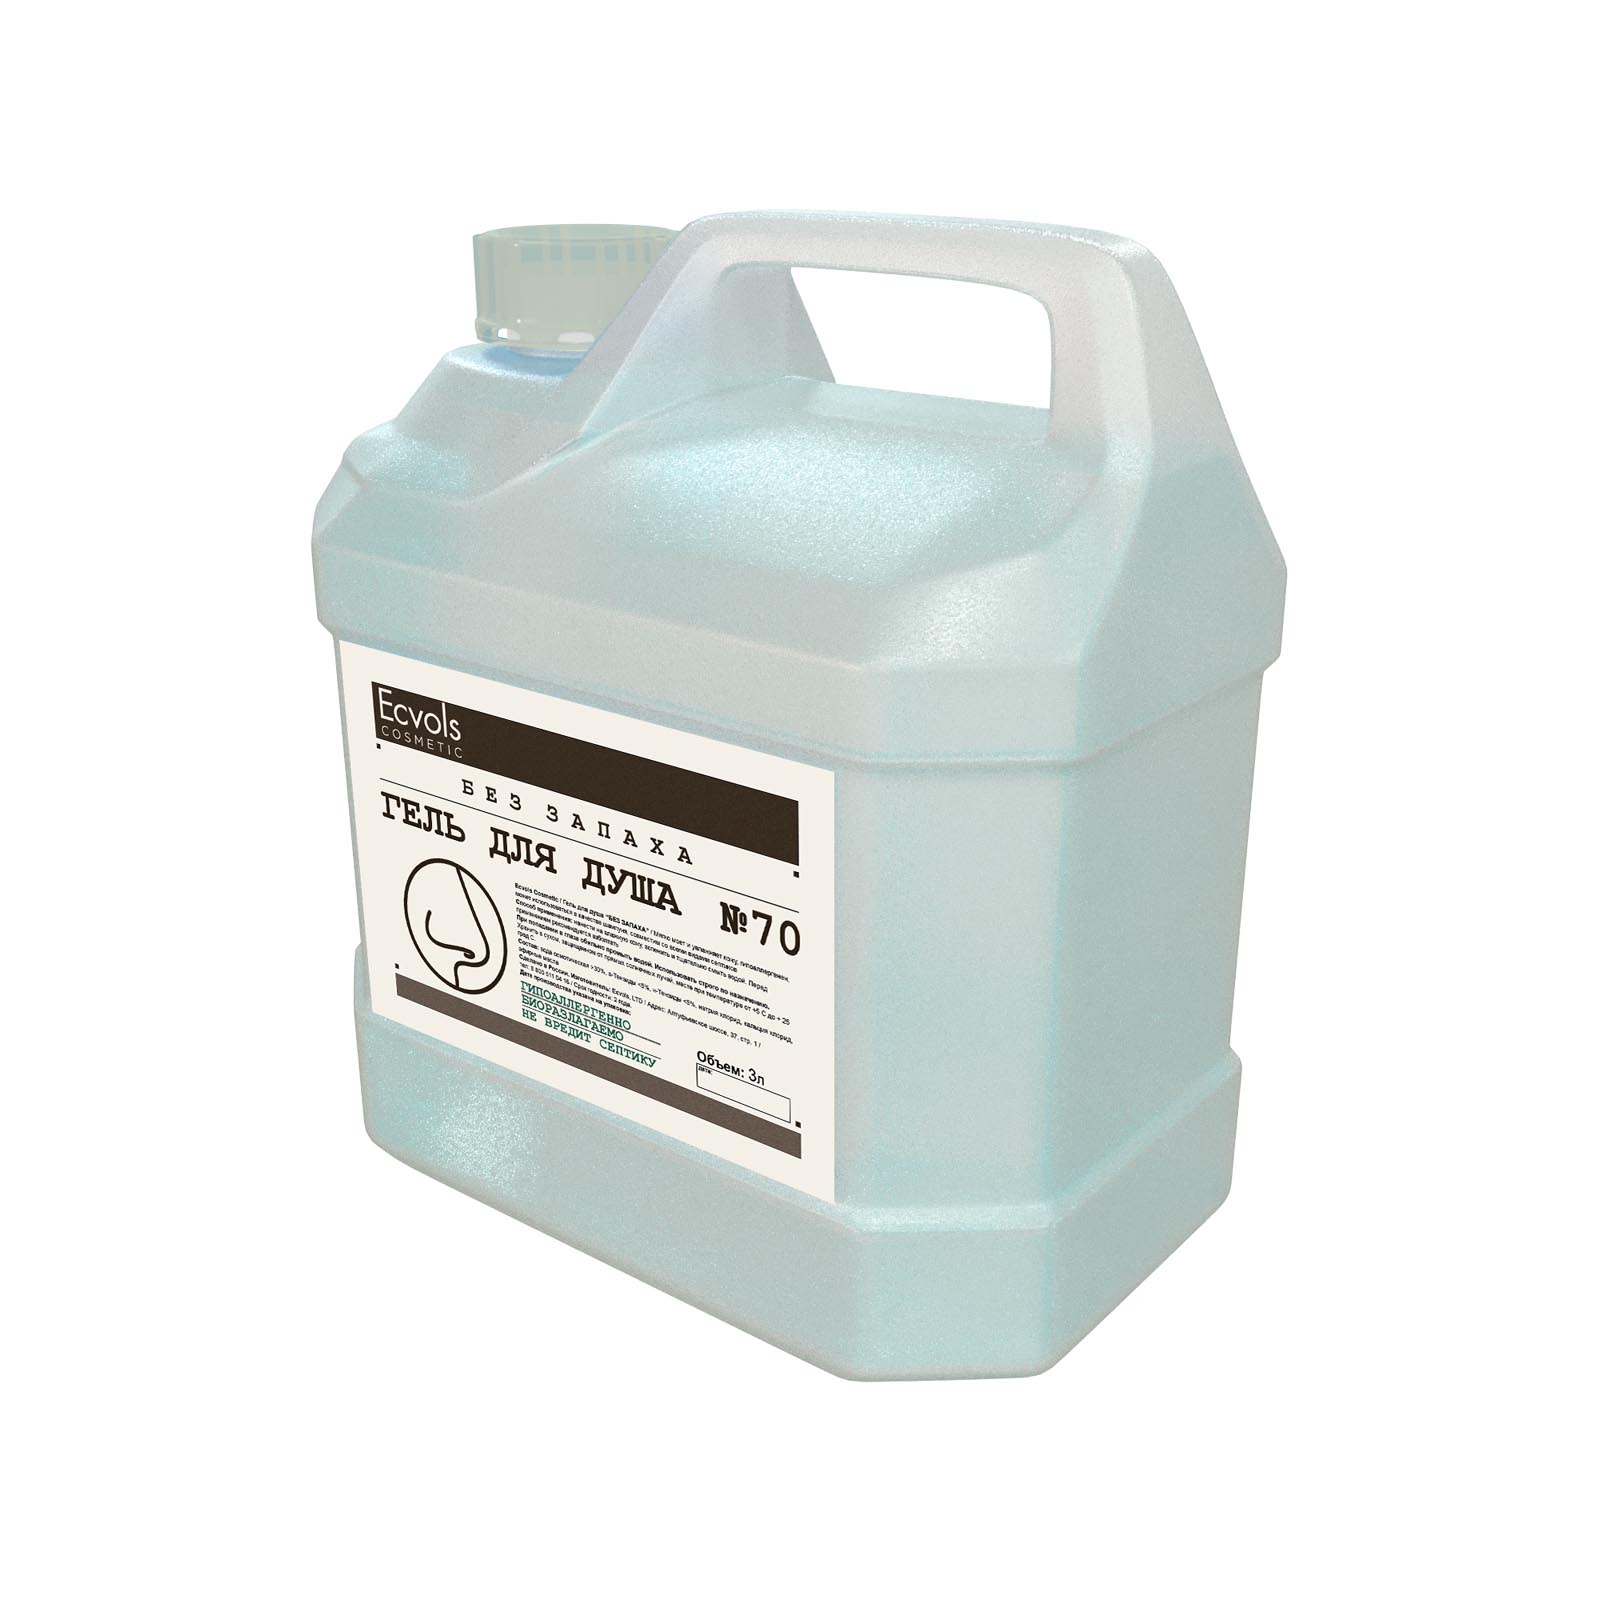 Гель гипоаллергенный для душа Ecvols №70 без запаха,3 л део стик rexona clinical protection гипоаллергенный без запаха 40мл